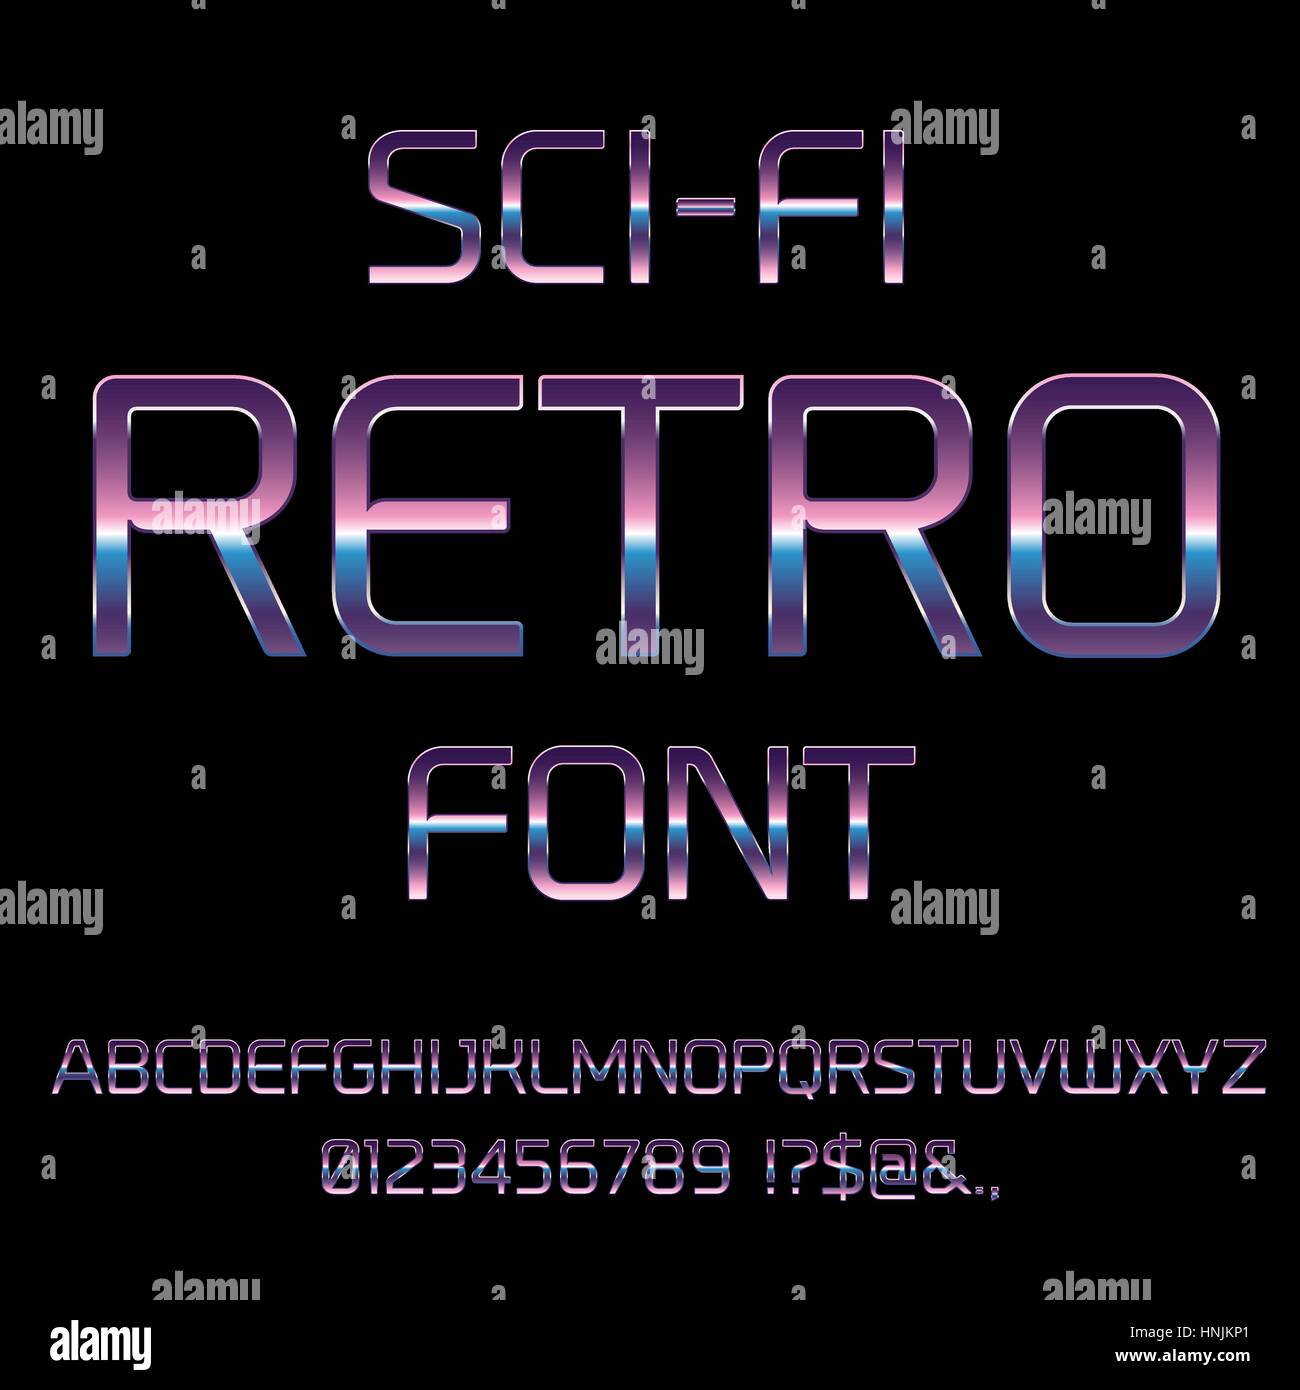 Sci-Fi retro font Stock Vector